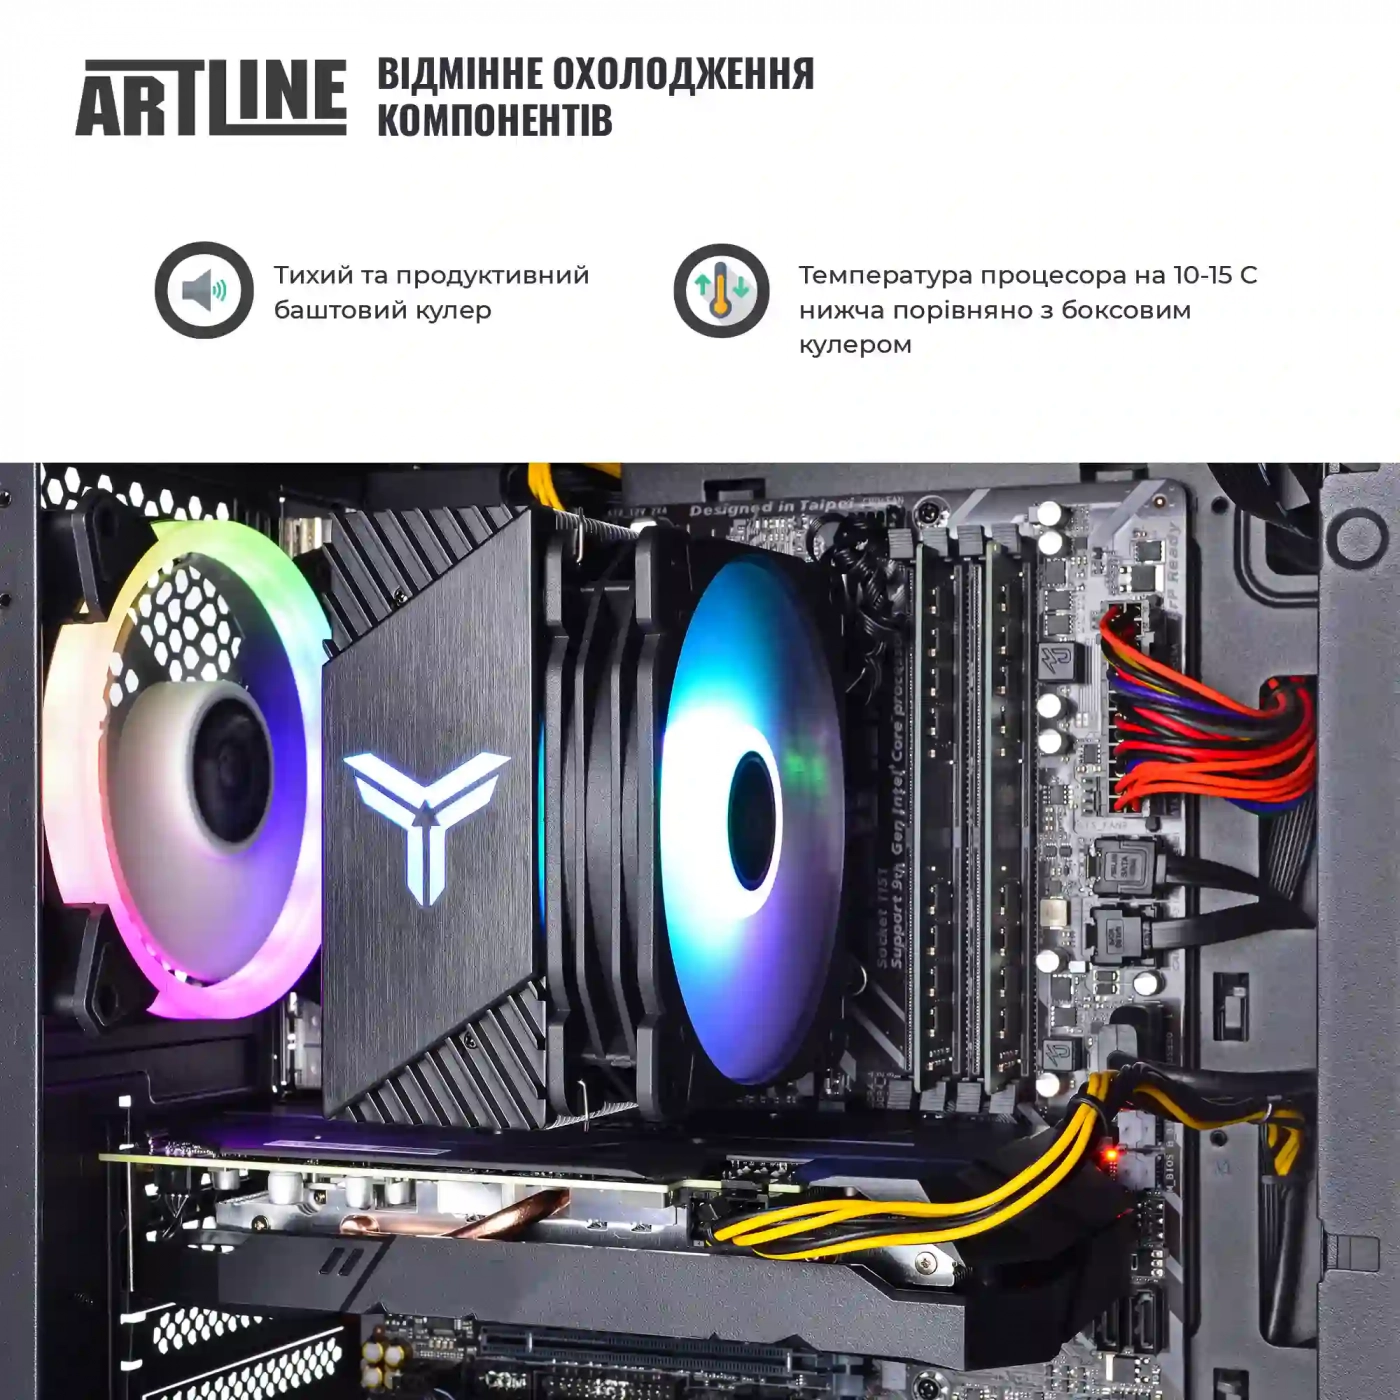 Купить Компьютер ARTLINE Gaming X39v67 - фото 3